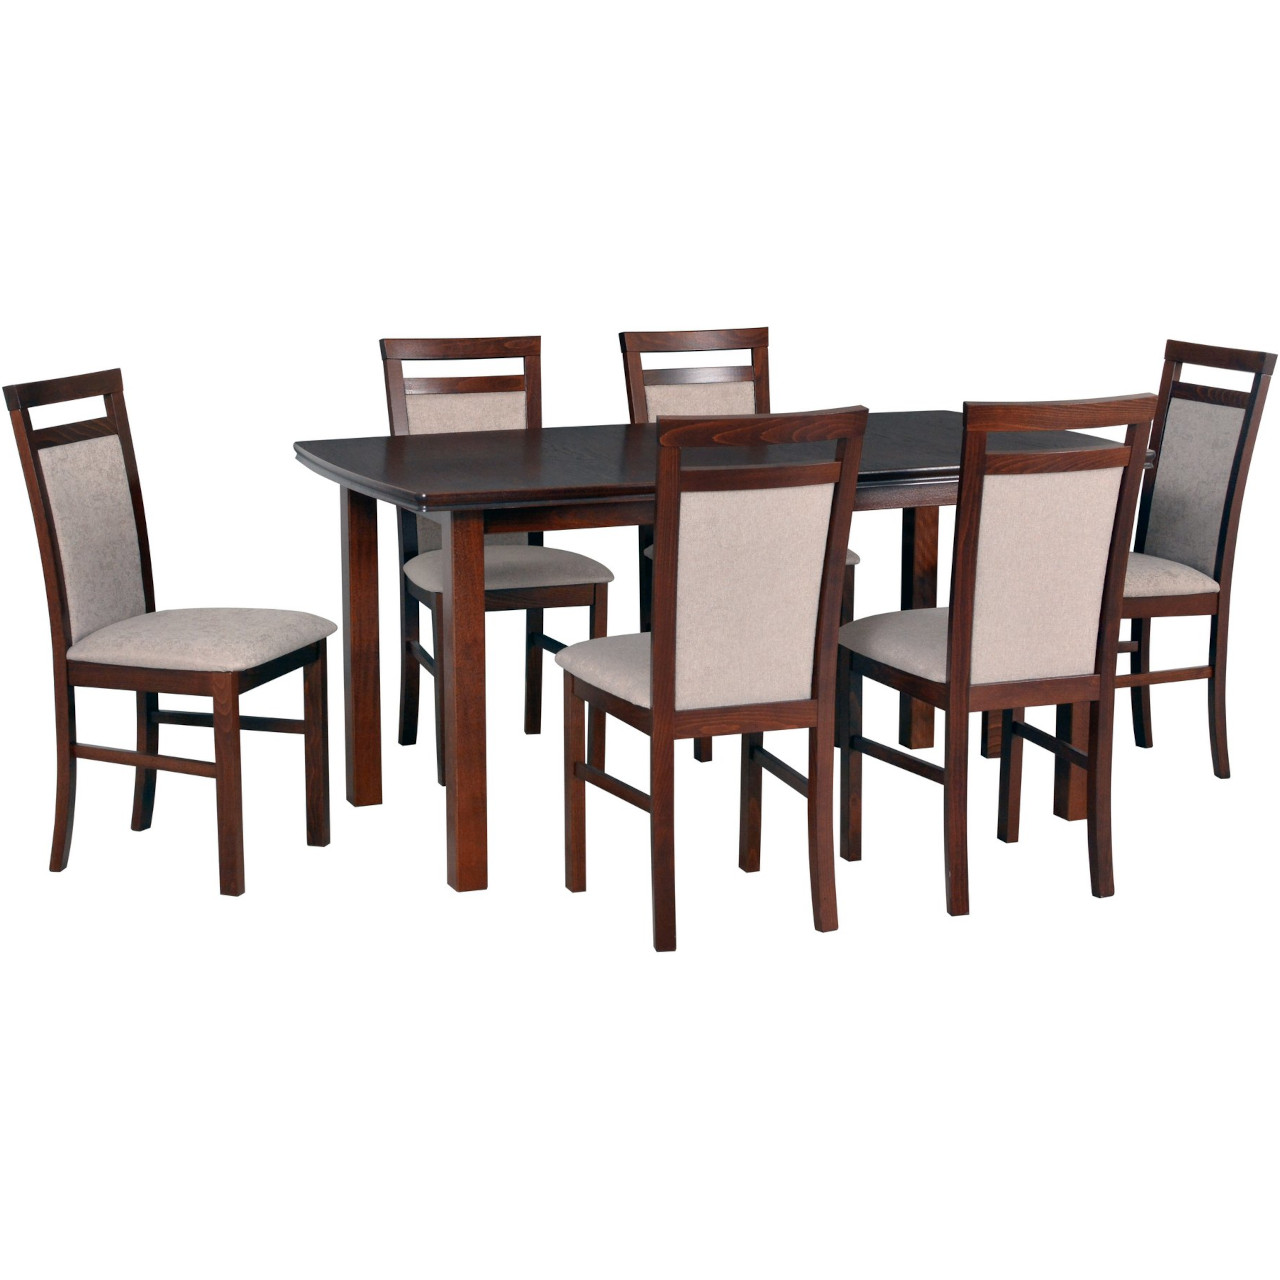 Asztal KENT 2 tölgy furnér / dió + szék MILANO 5 (6 db) dió / 5B